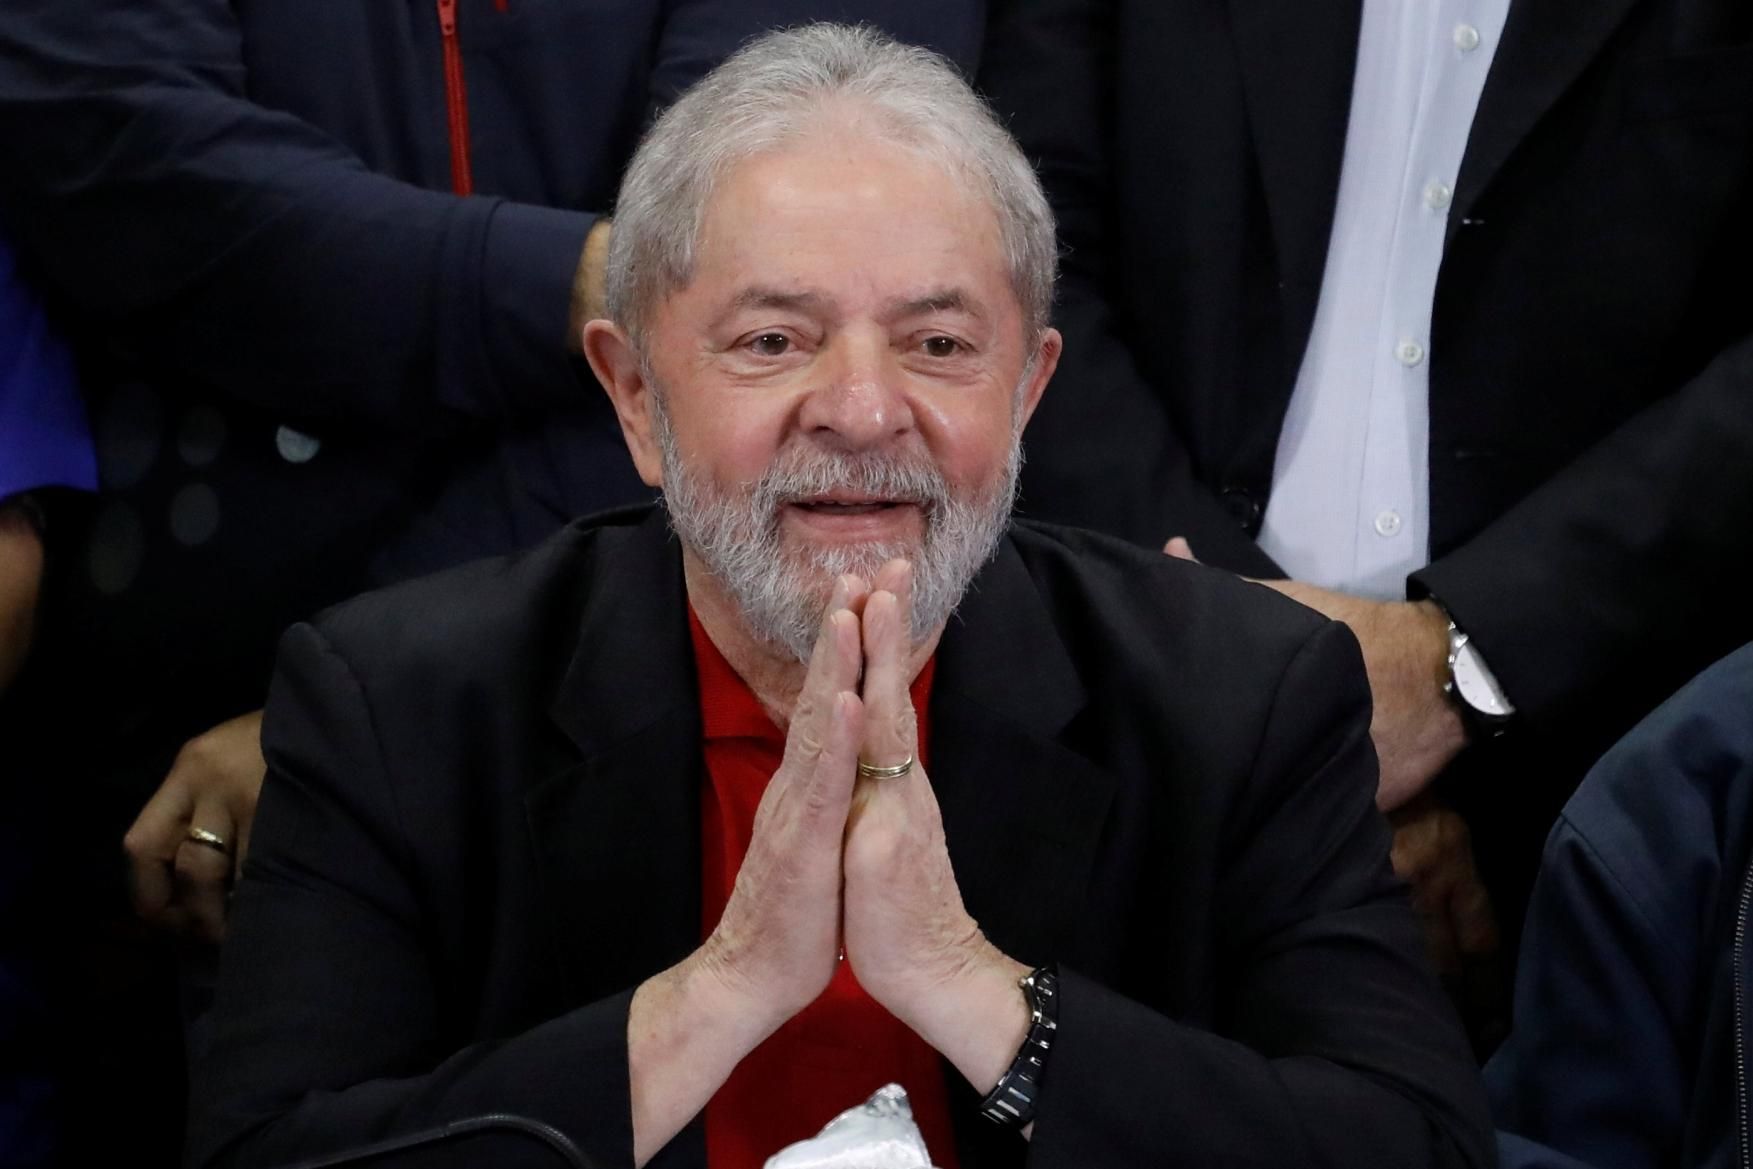 Os evangélicos descobriram o que Lula não conseguiu: para